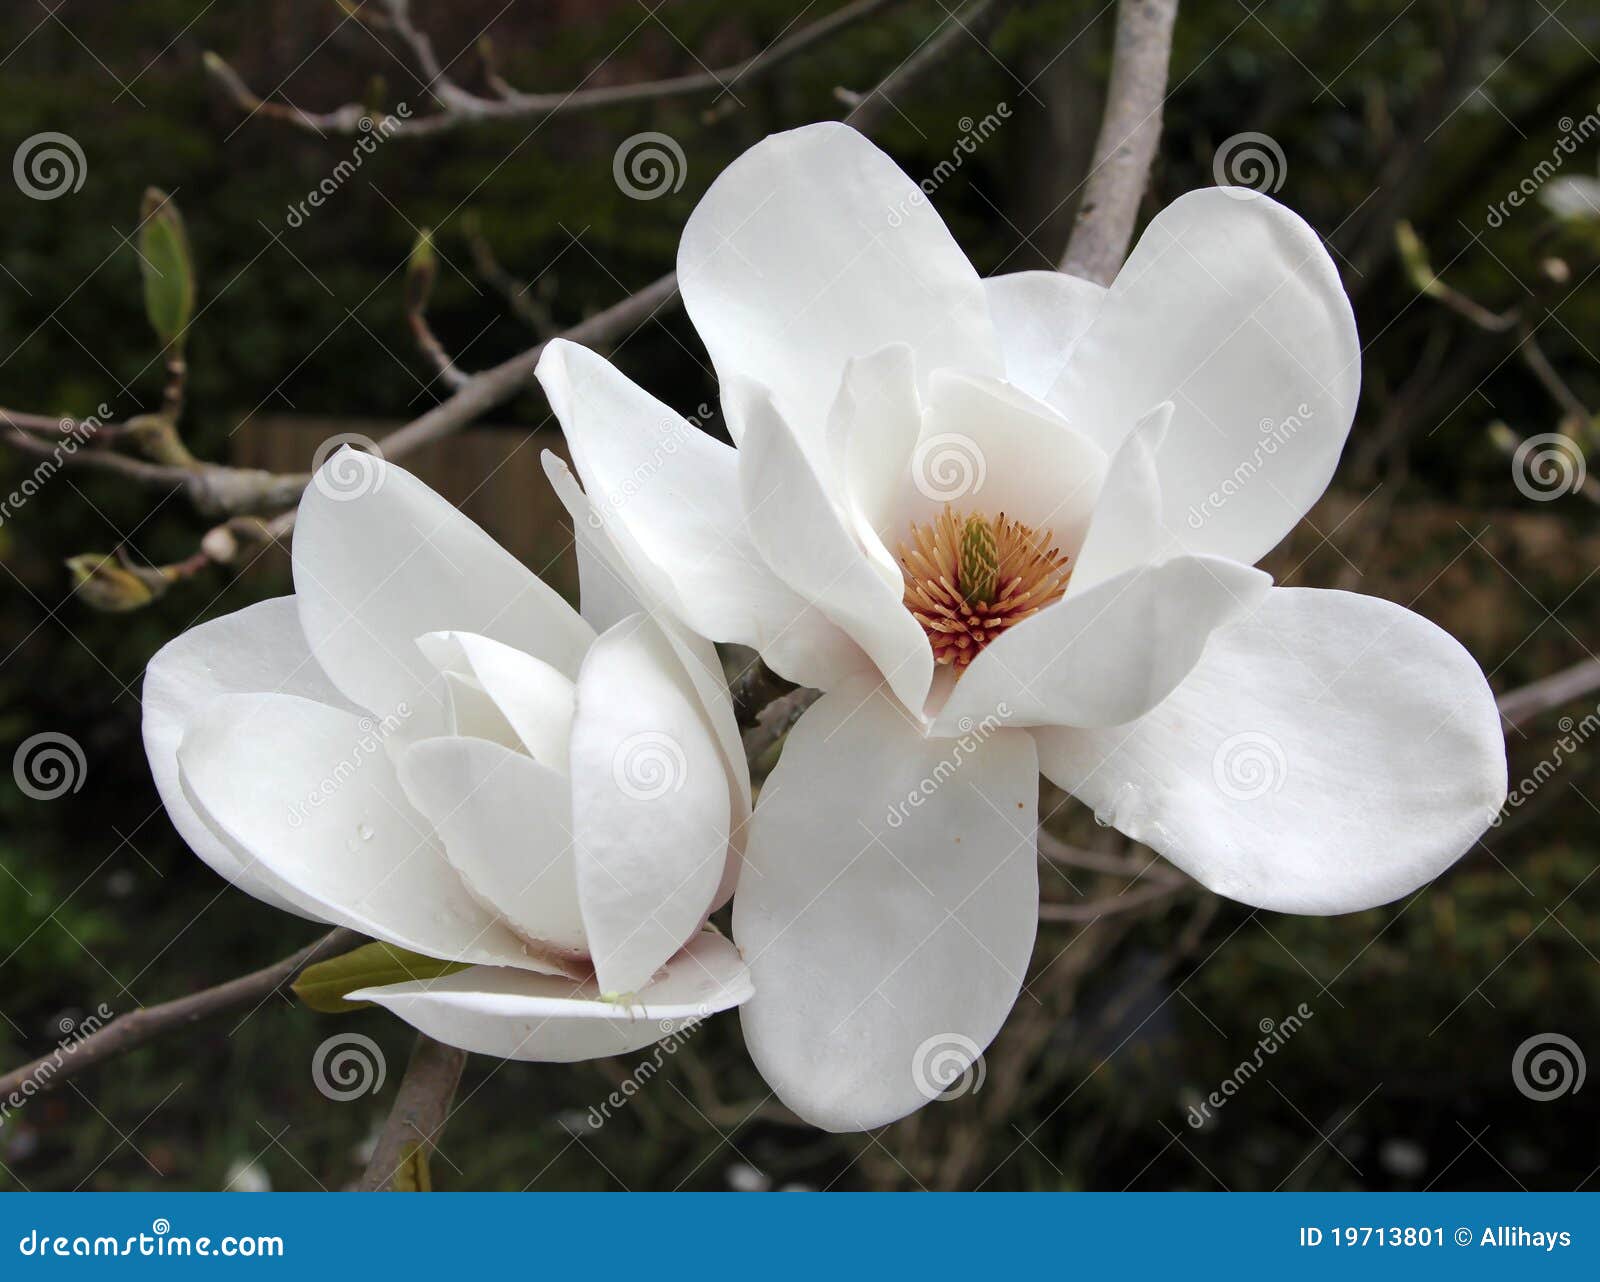 magnolia grandiflora blossom